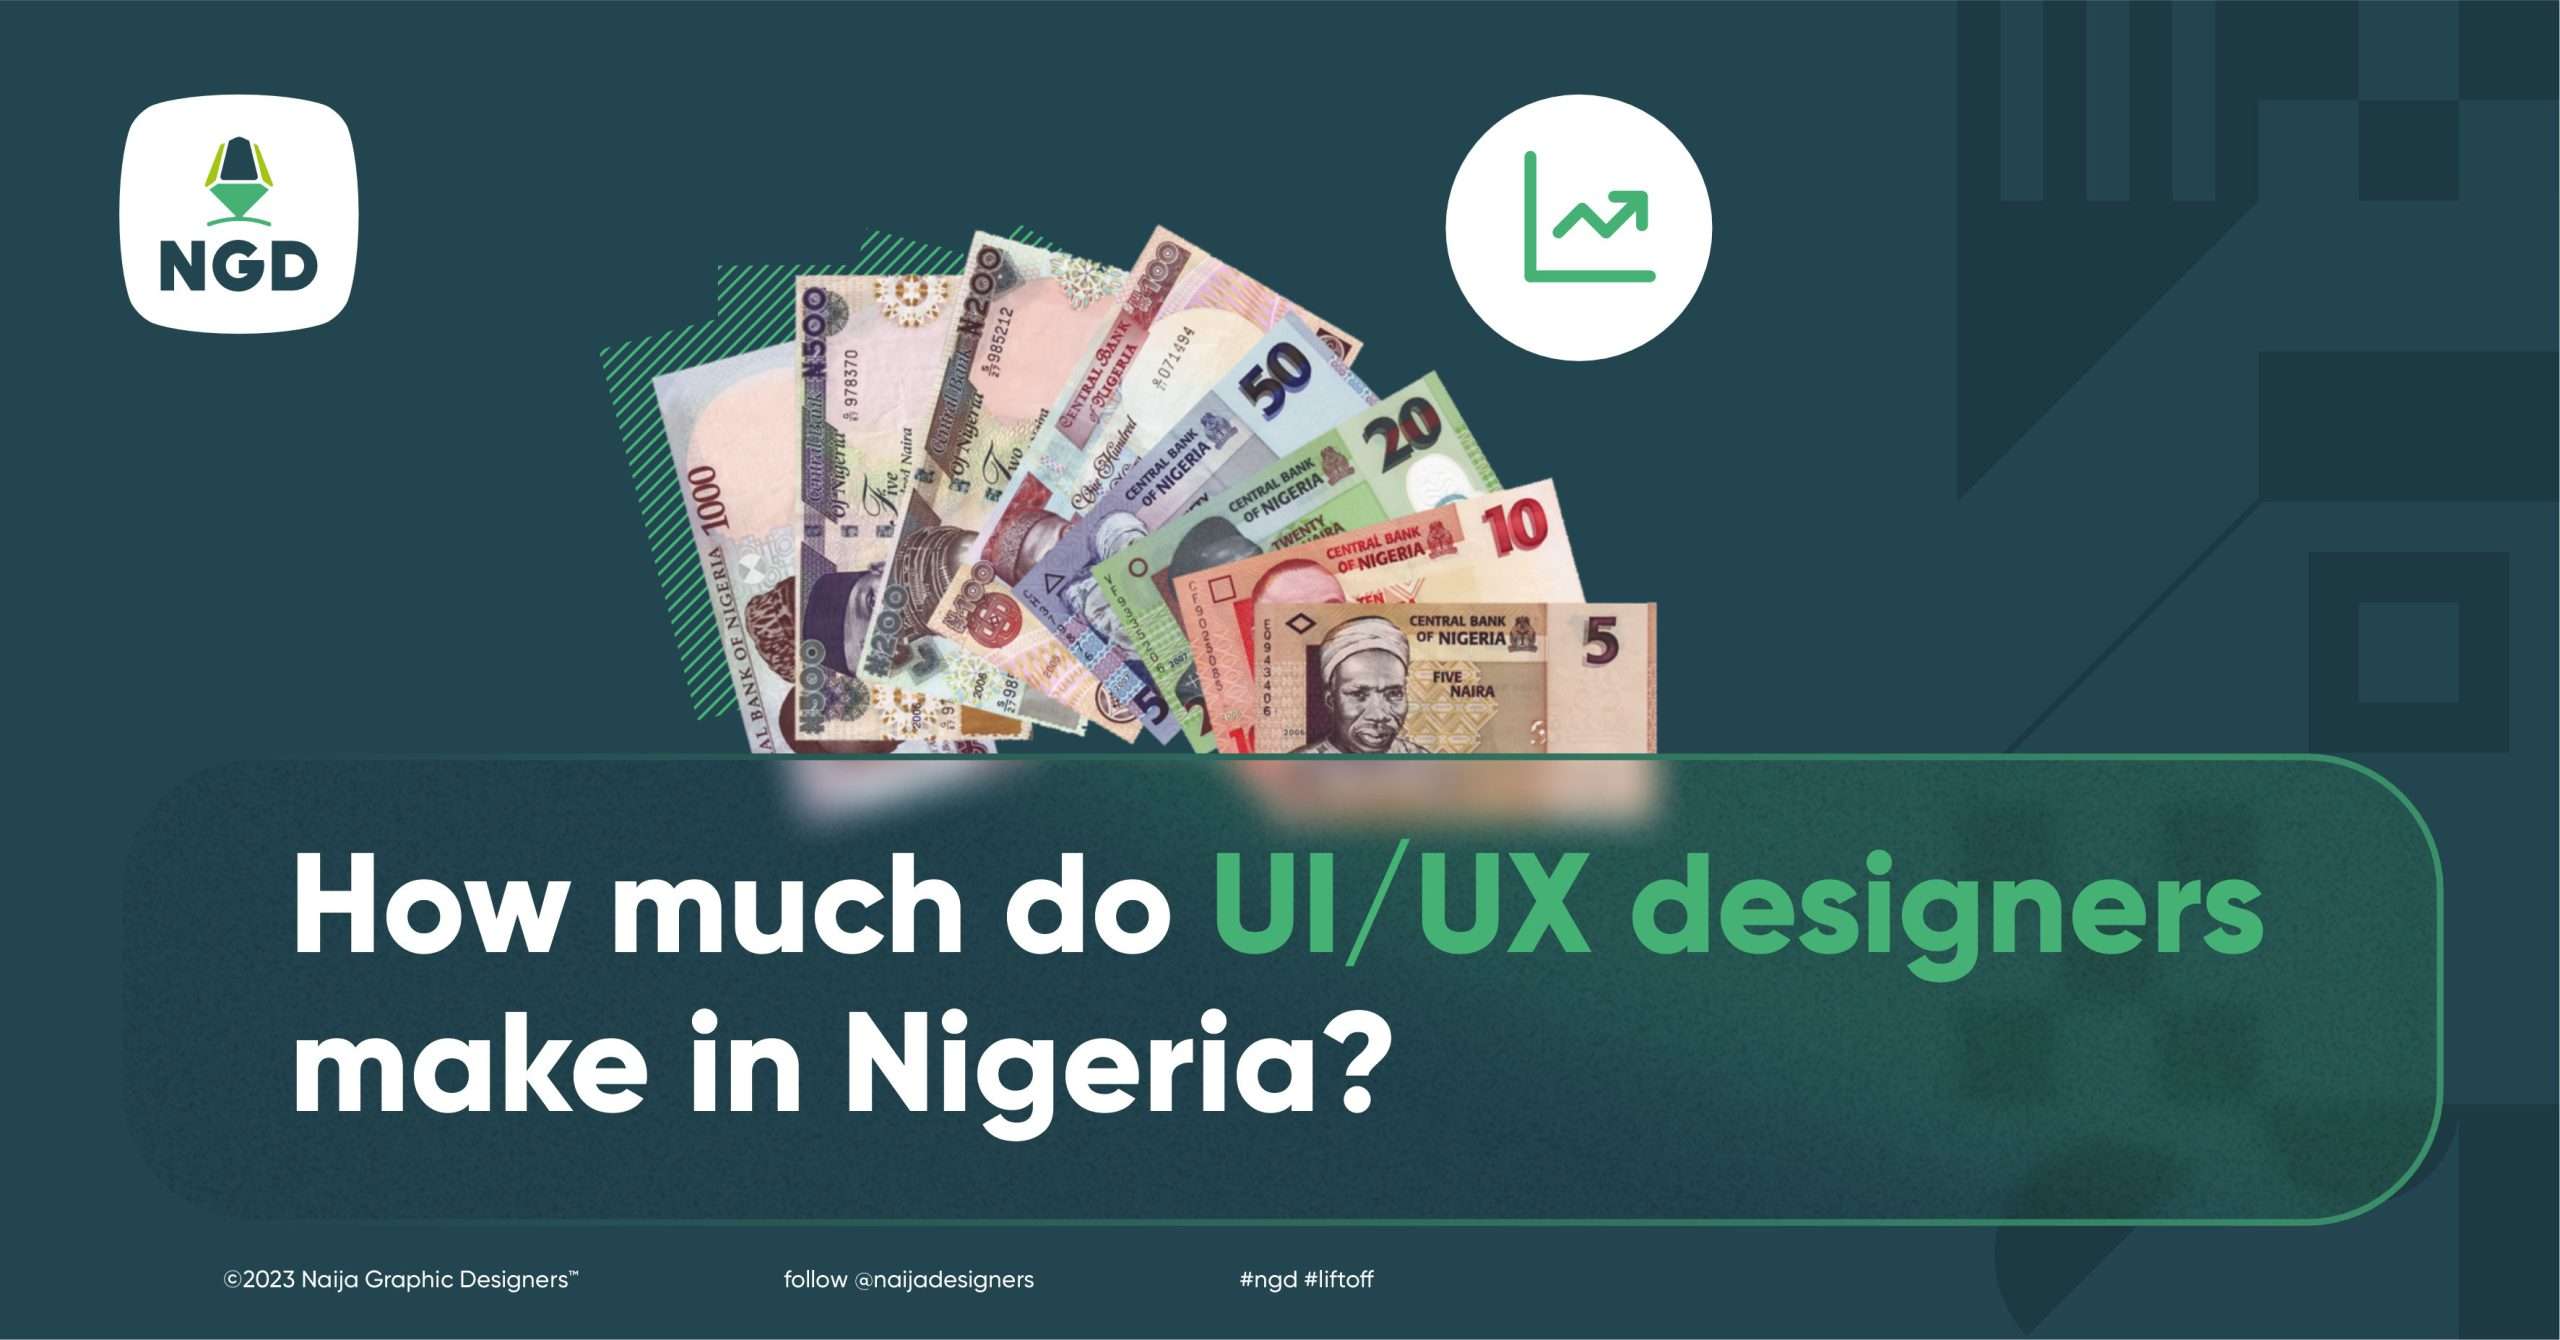 How much do UI/UX designers make in Nigeria? 